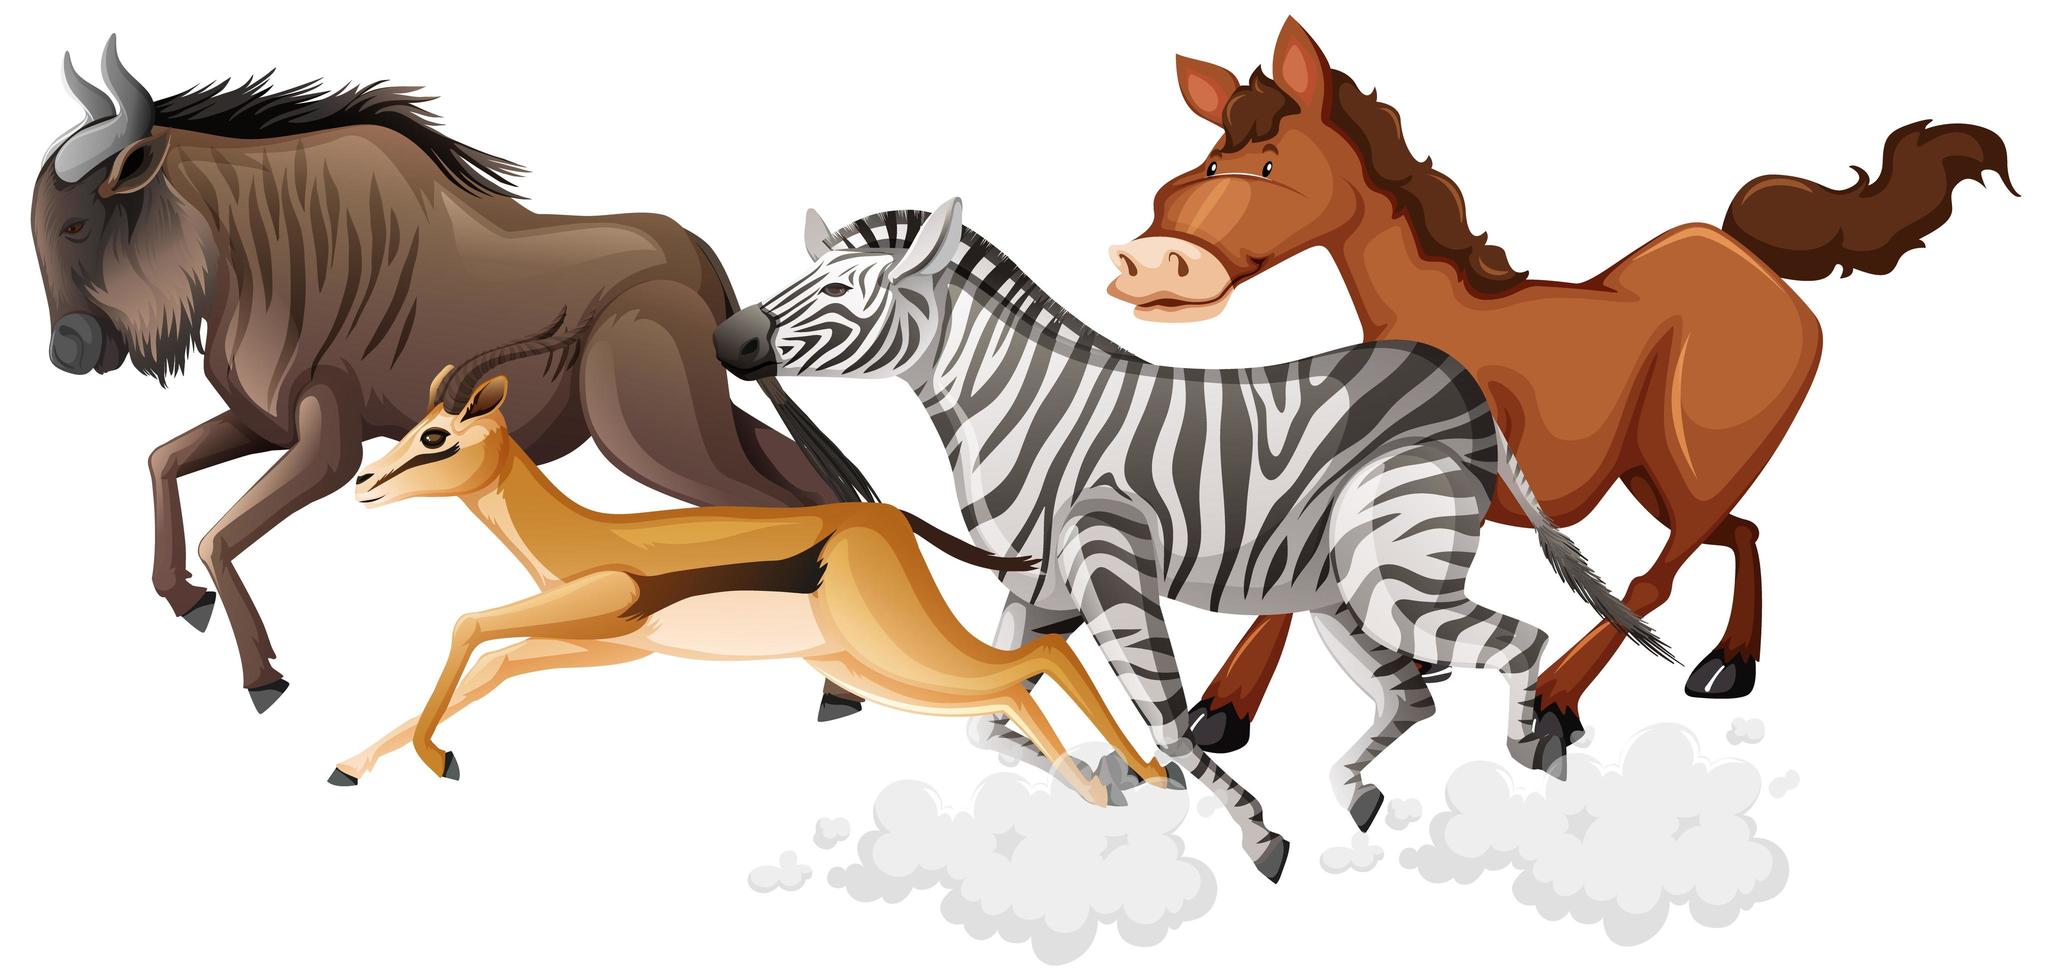 Wild running animals group cartoon style 1235556 Vector Art at Vecteezy